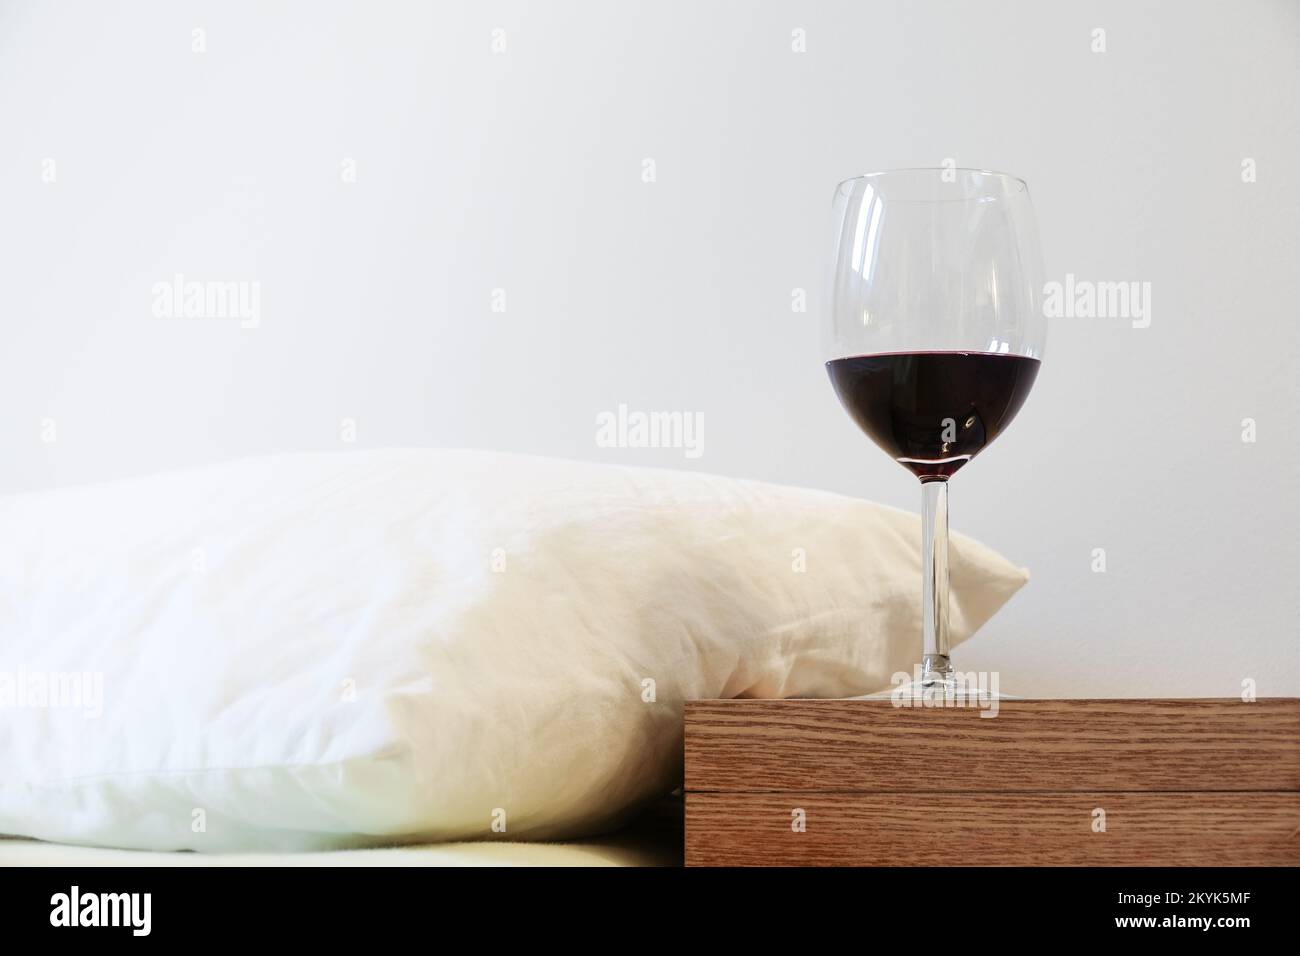 Kissen und Weinglas auf dem Nachttisch. Begriff Alkoholmissbrauch und Schlafproblem Stockfoto